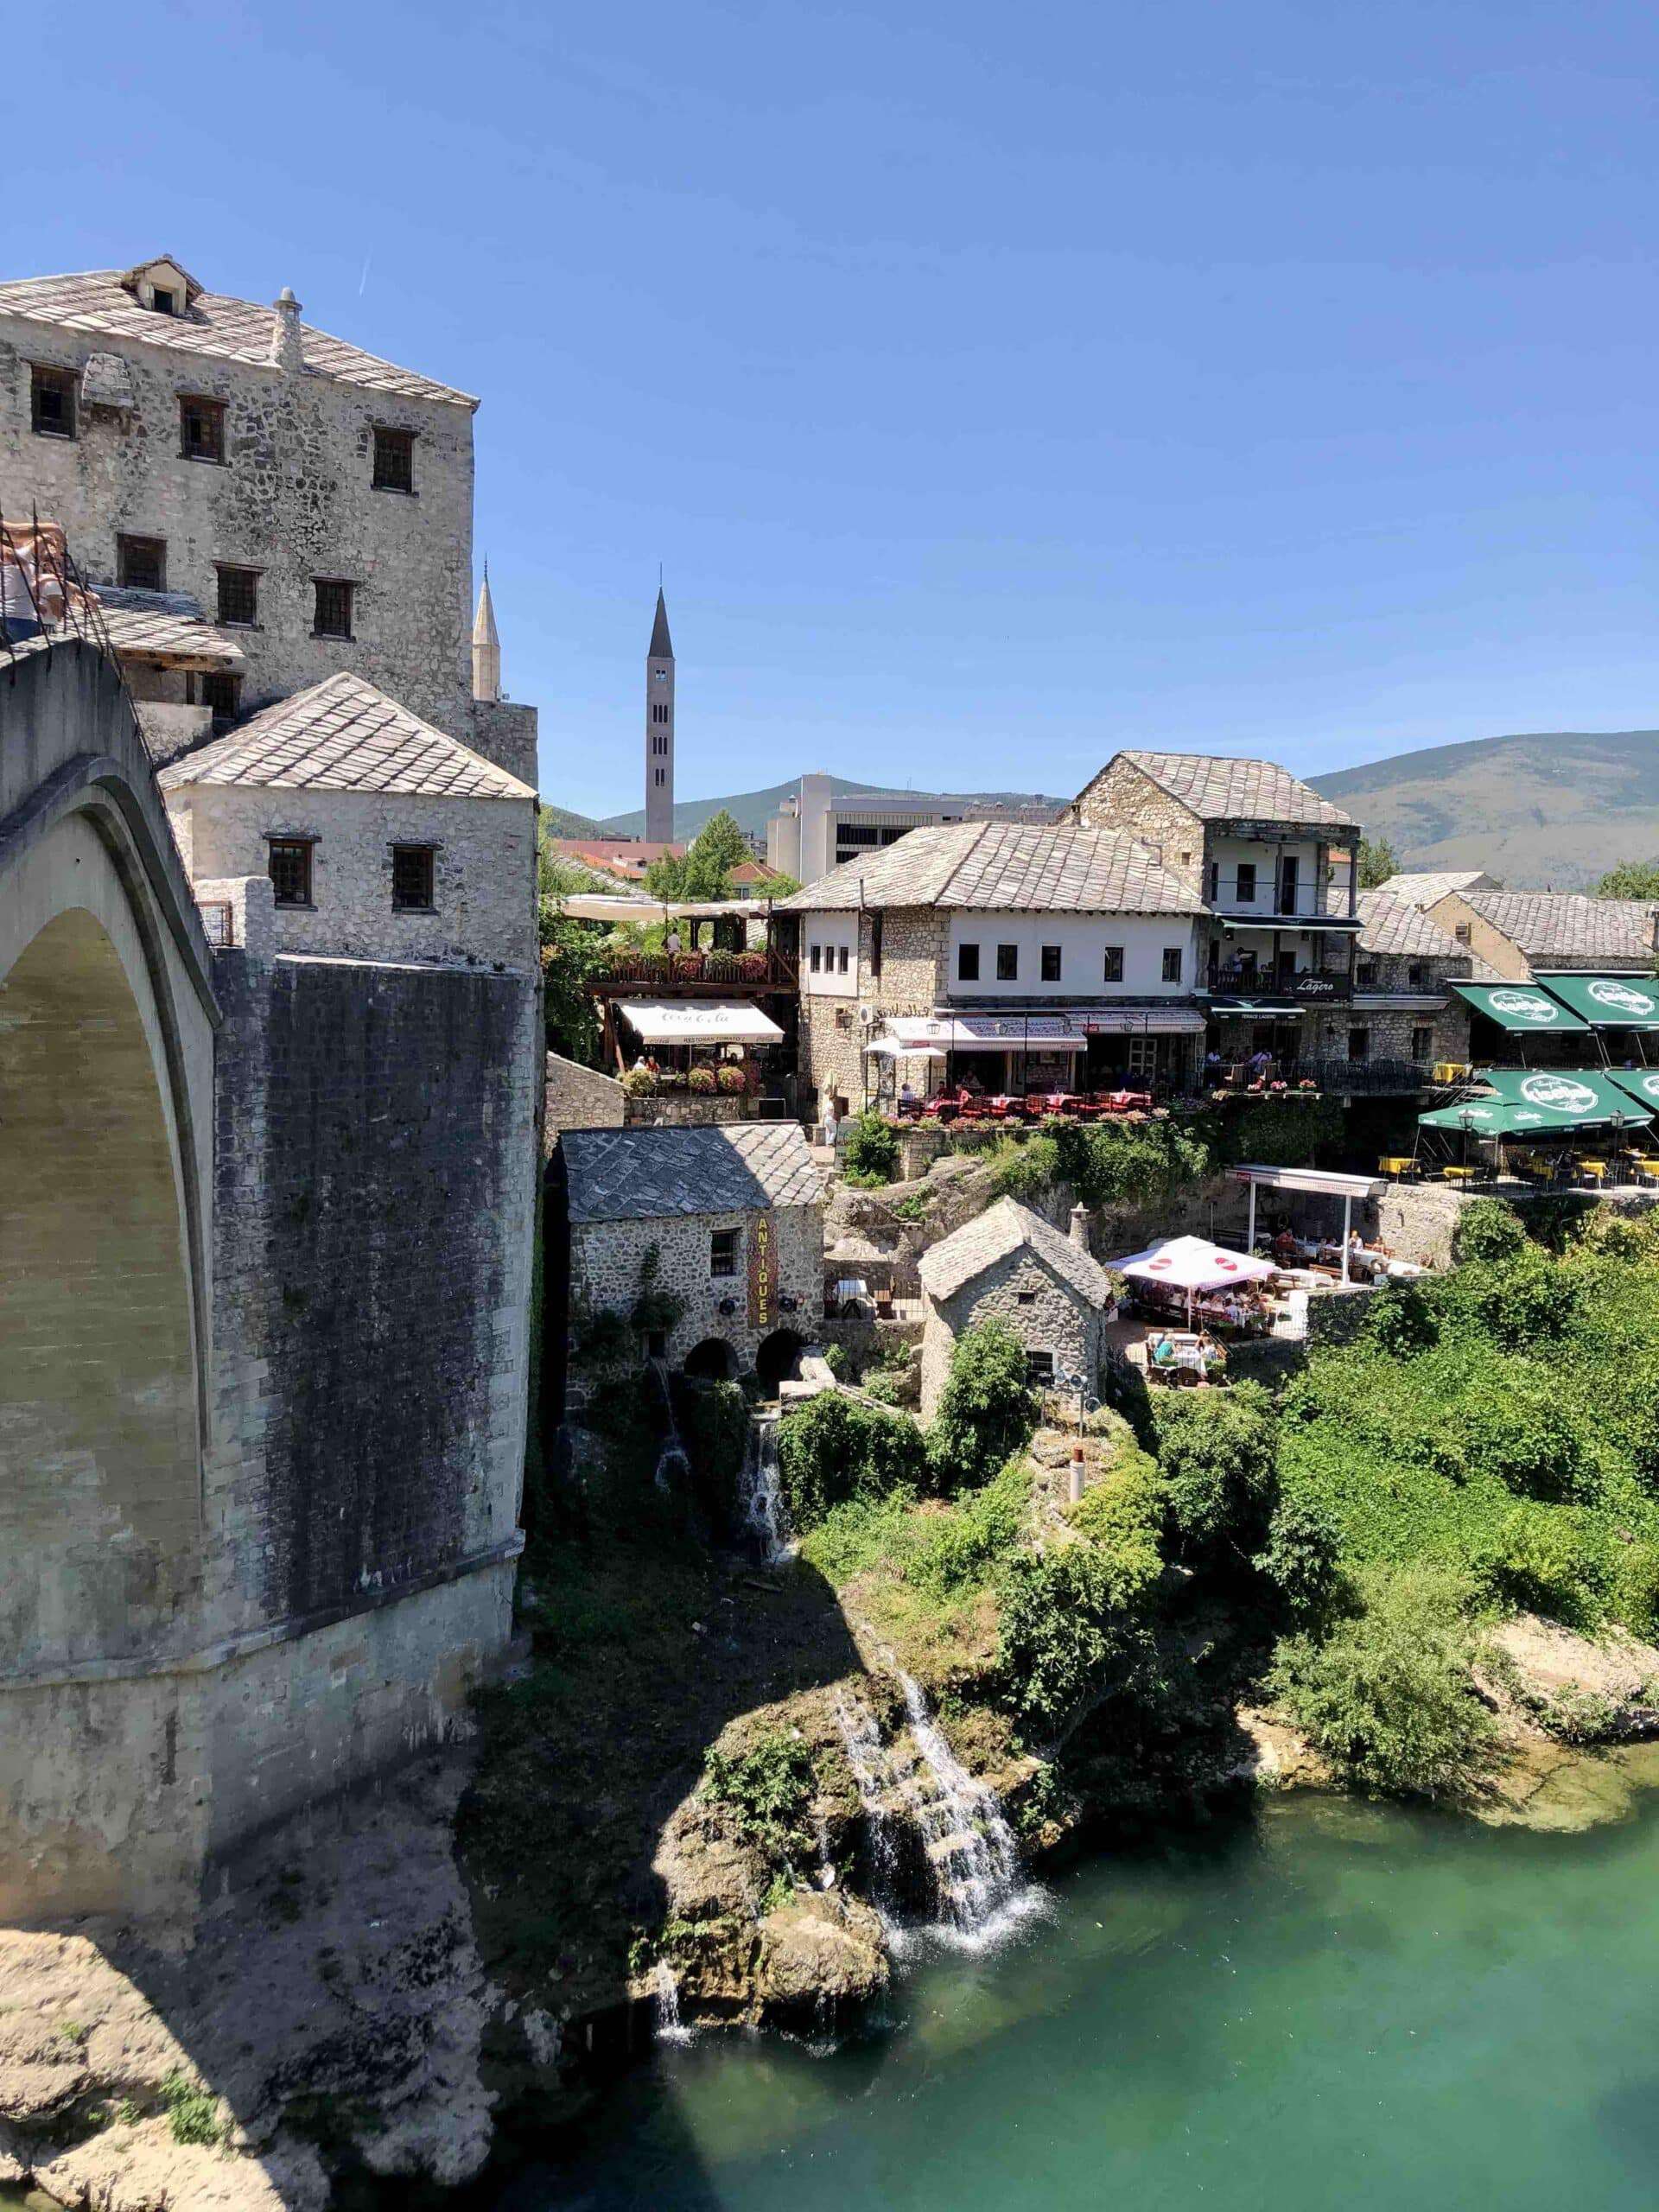 Ultimate day trip to Mostar from Sarajevo